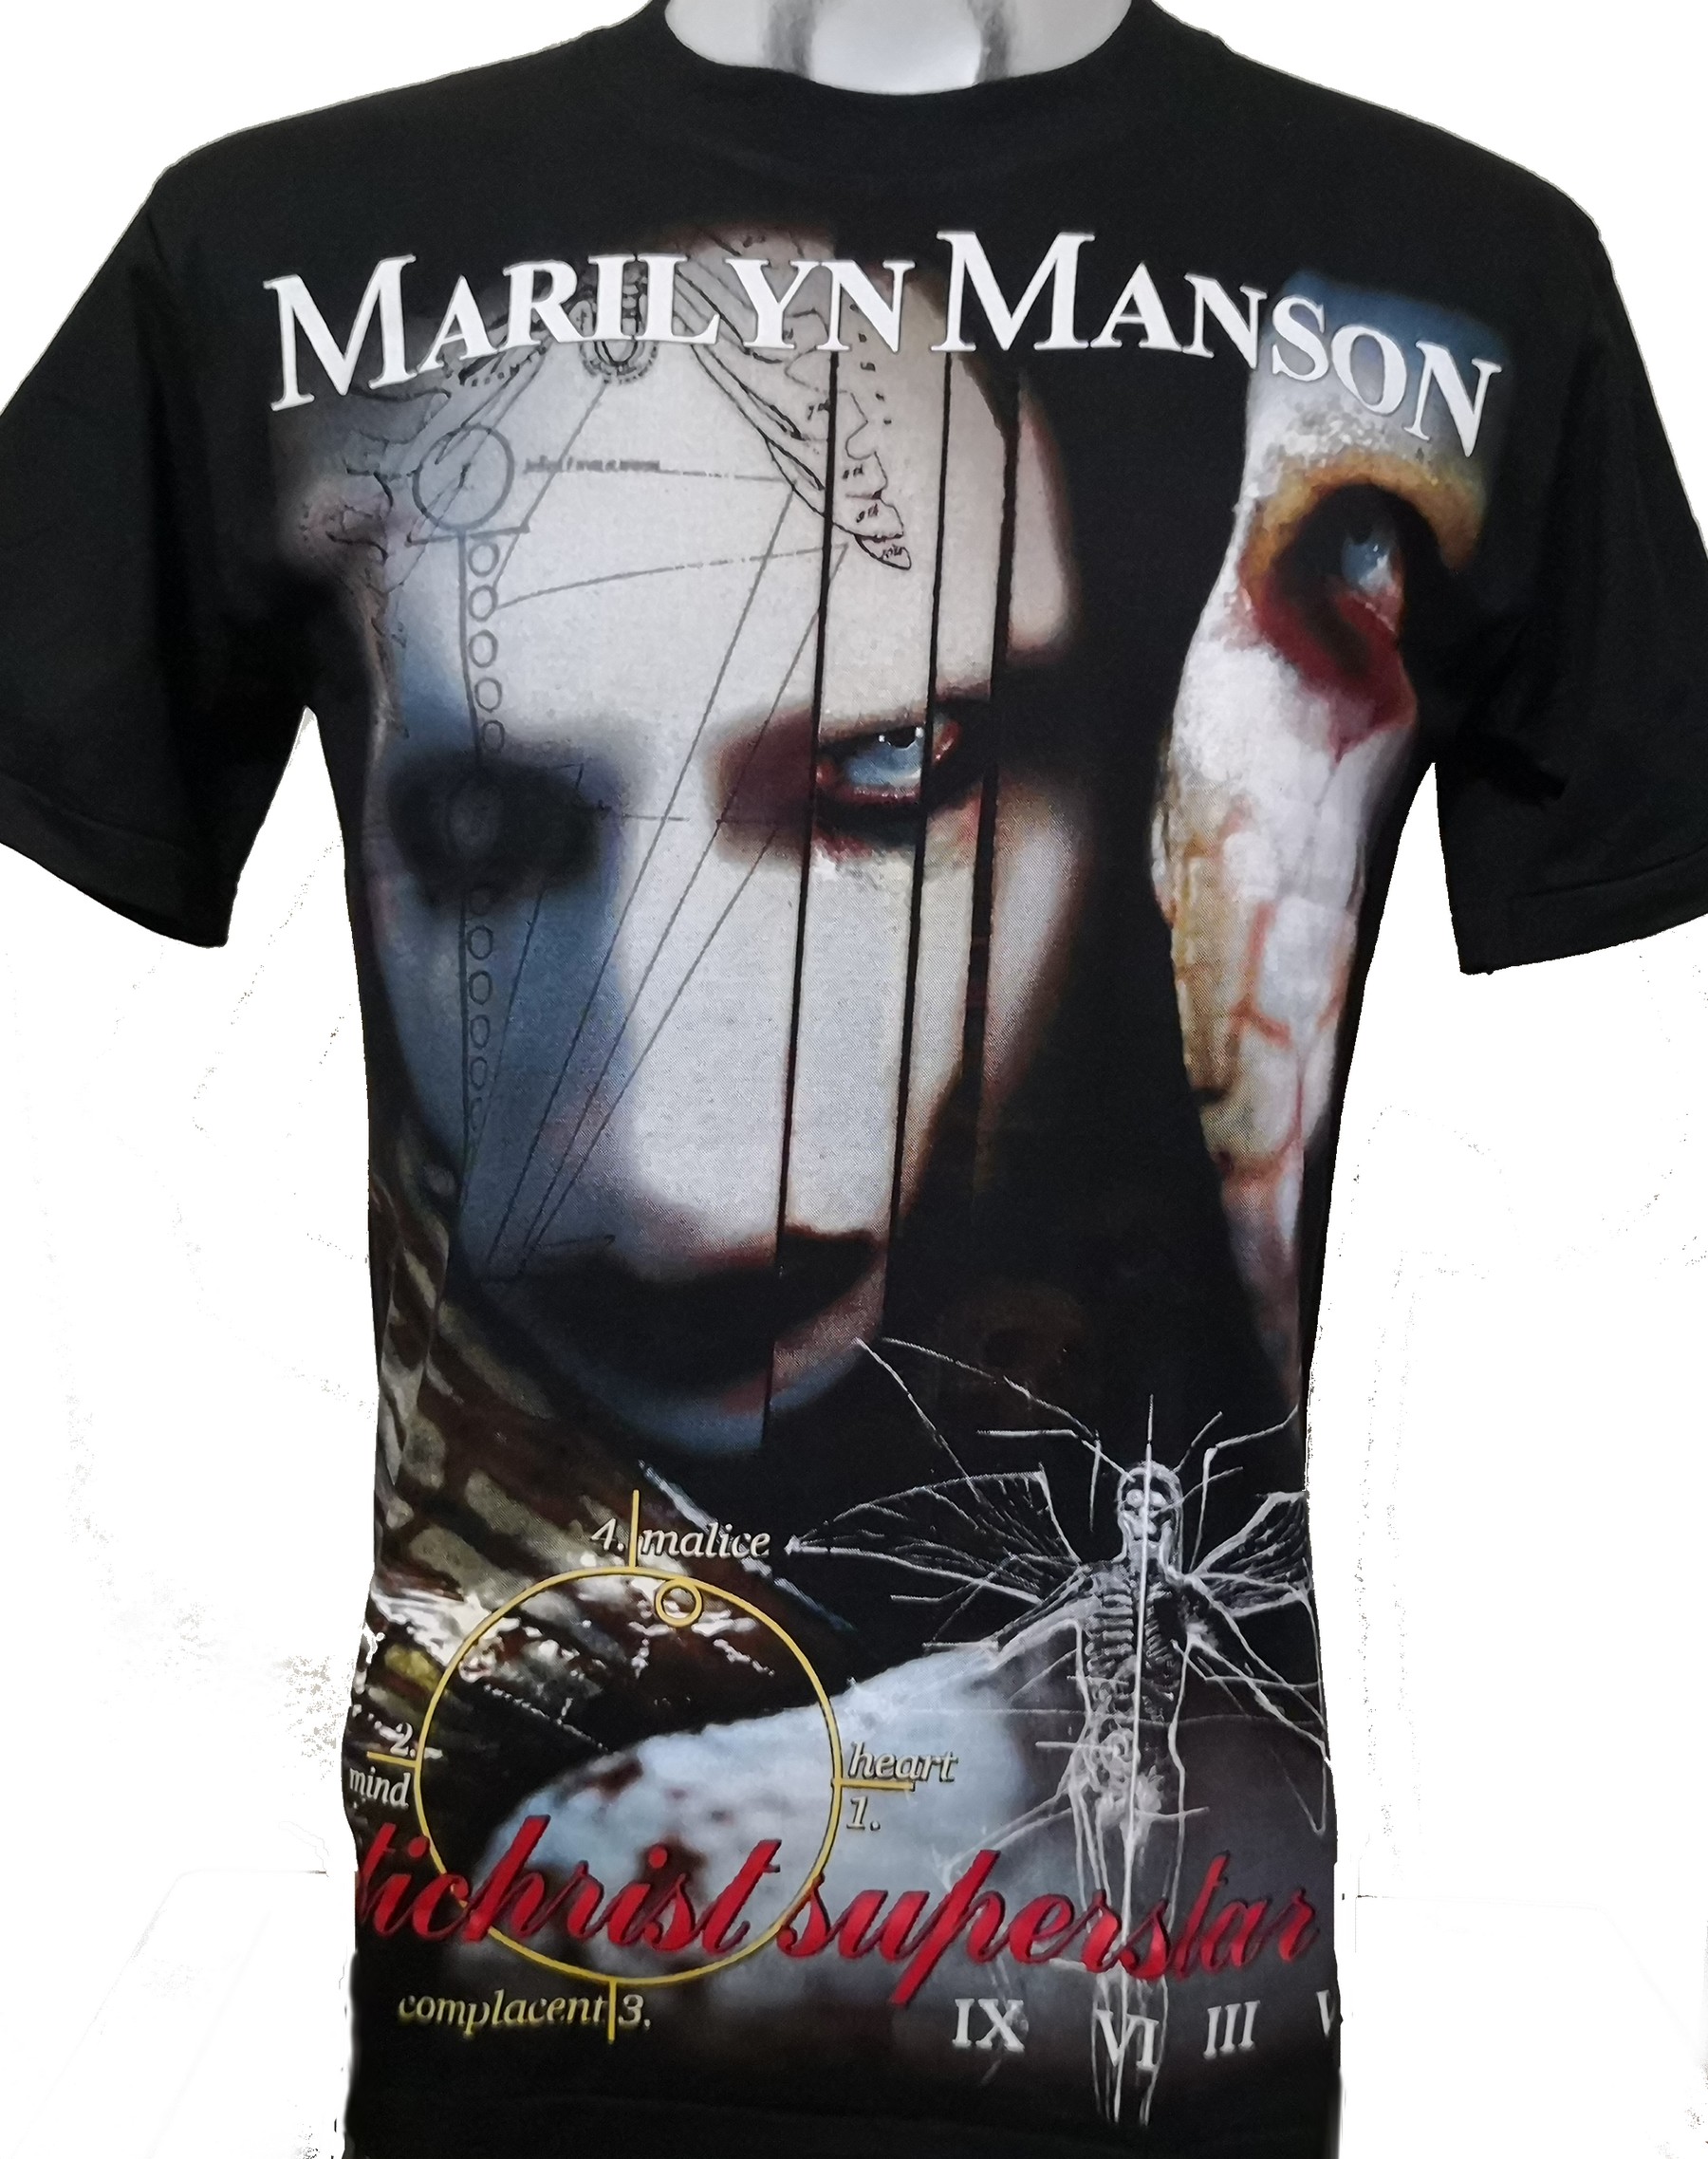 Marilyn Manson t-shirt Antichrist Superstar size L